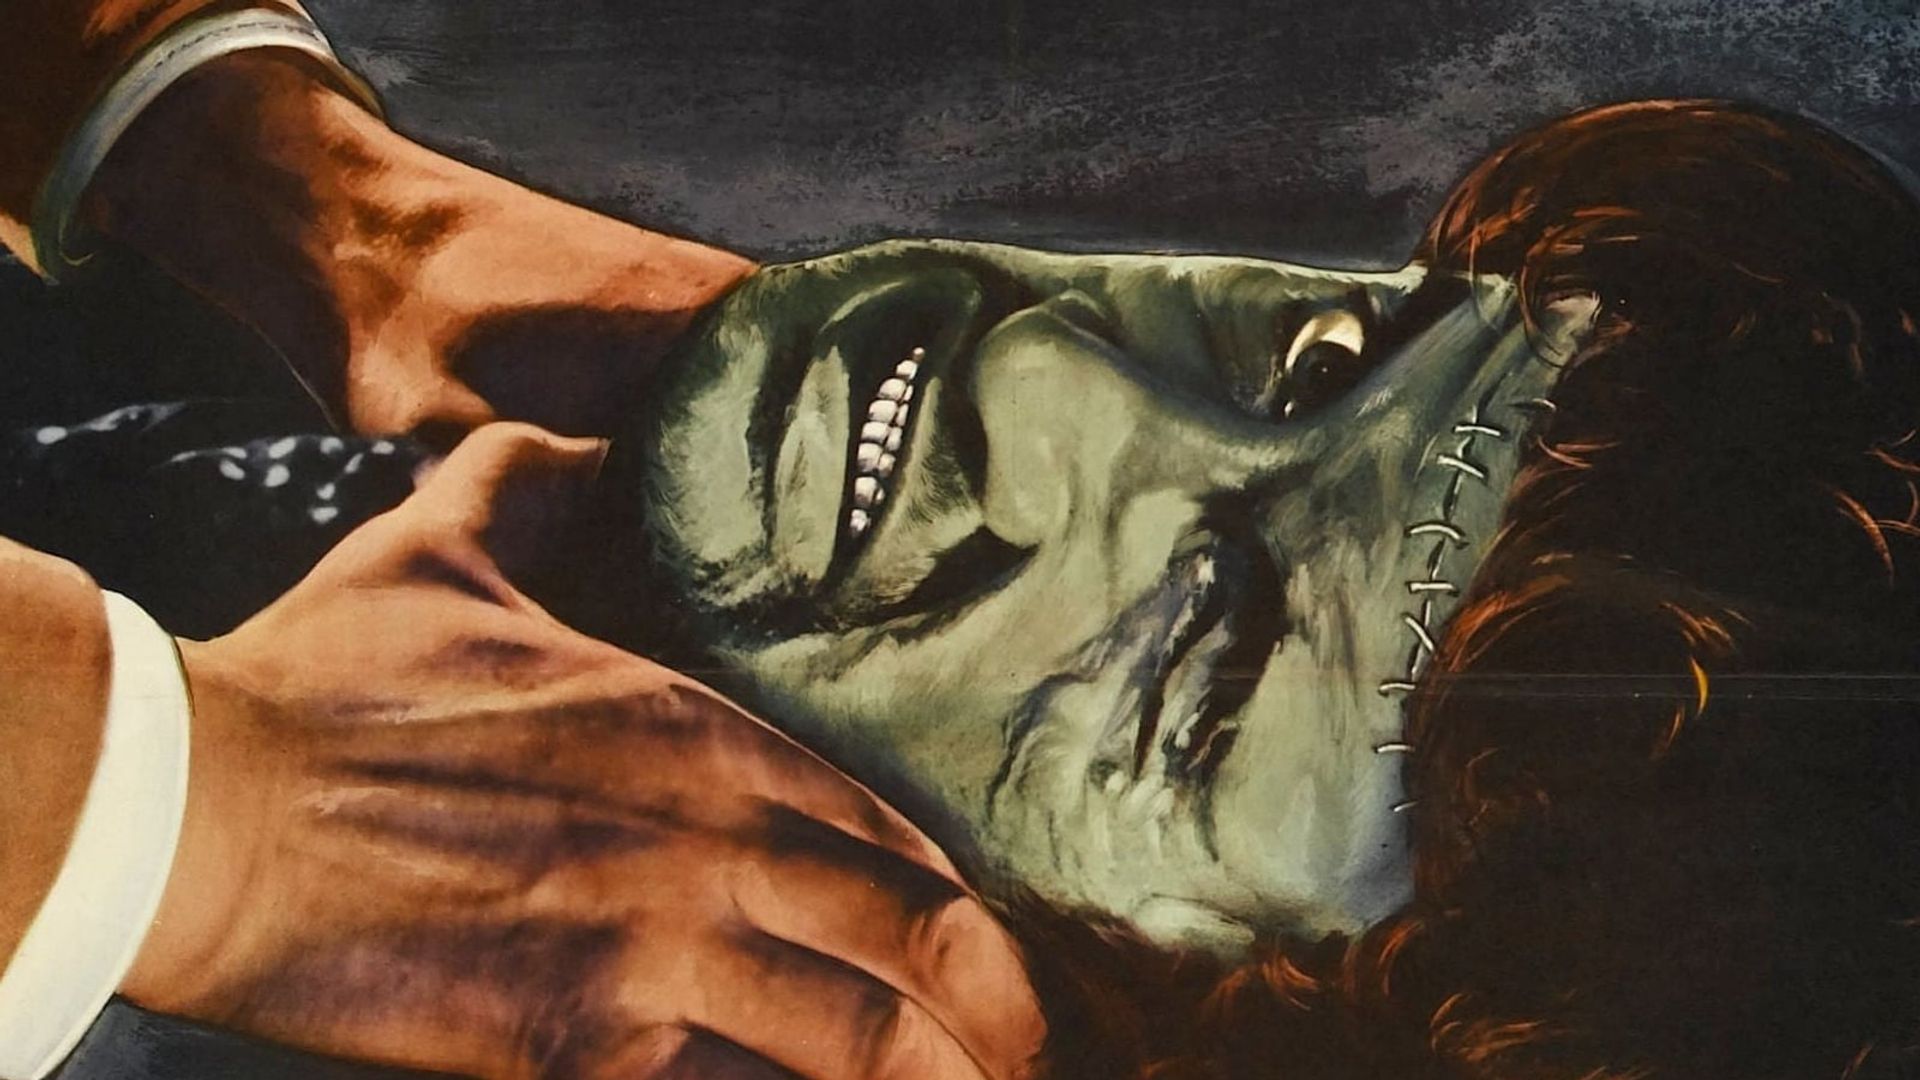 The Revenge of Frankenstein background